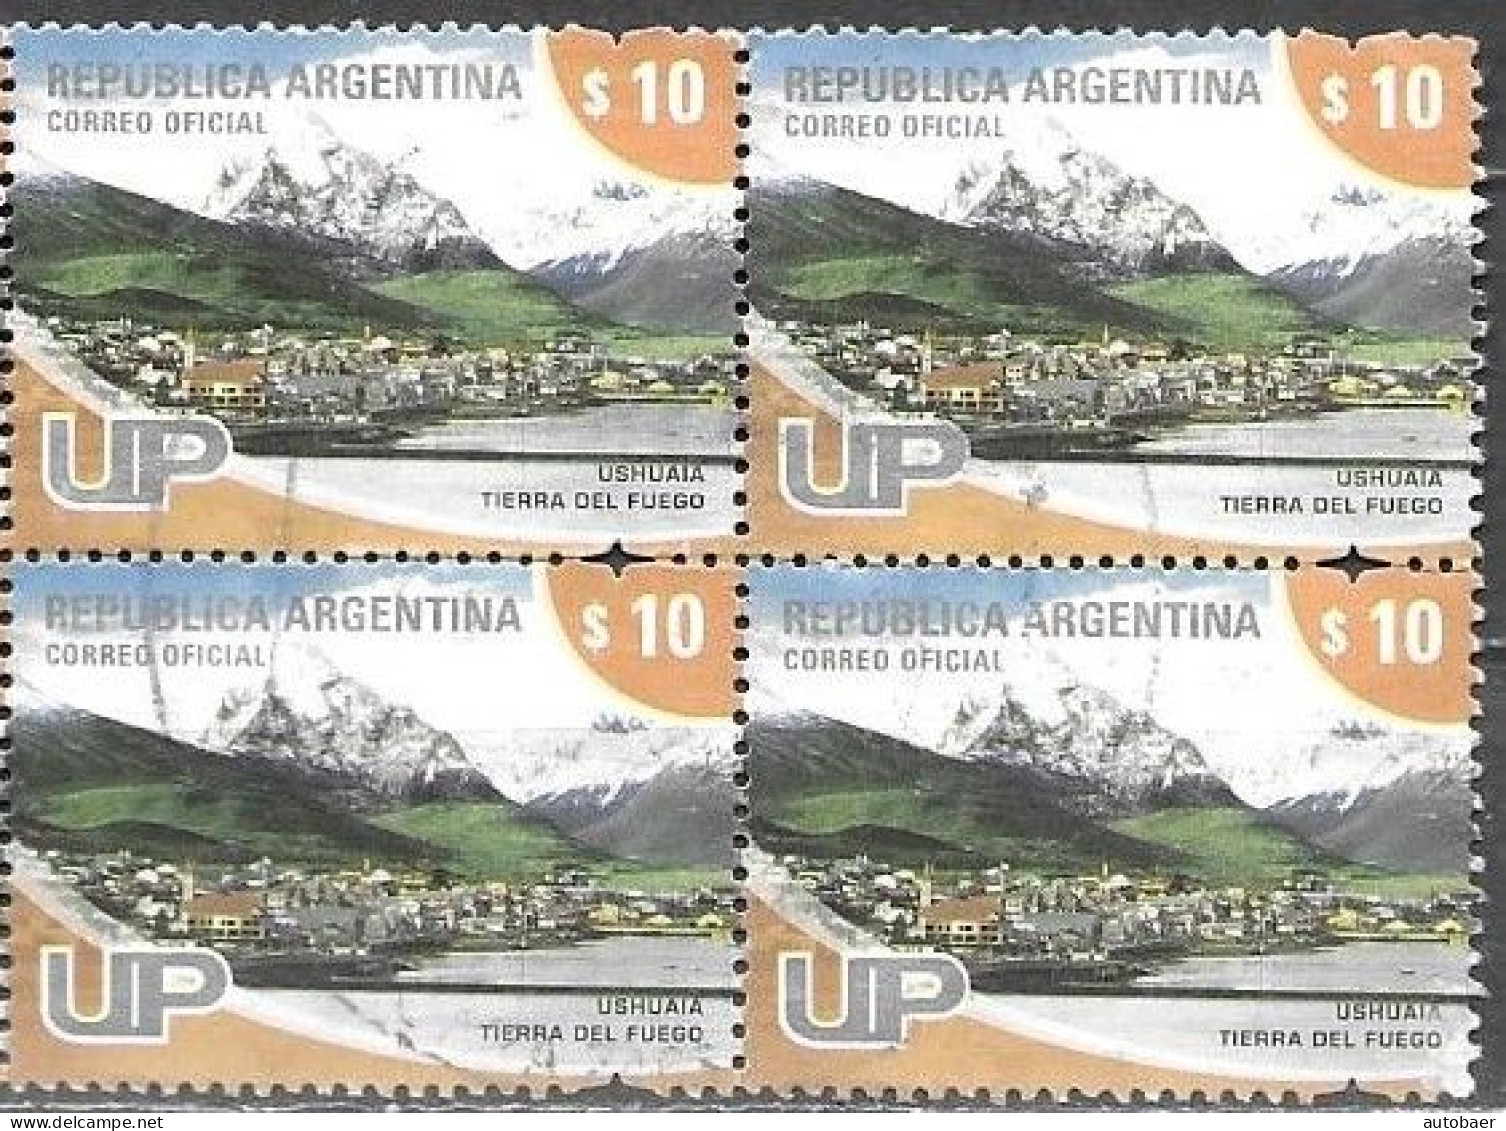 Argentina 2008 Definitives U.P. UP Tourism Ushuaia Mi. 3230A Bloc Of 4 Used Cancelled Gestempelt Oblitéré - Oblitérés